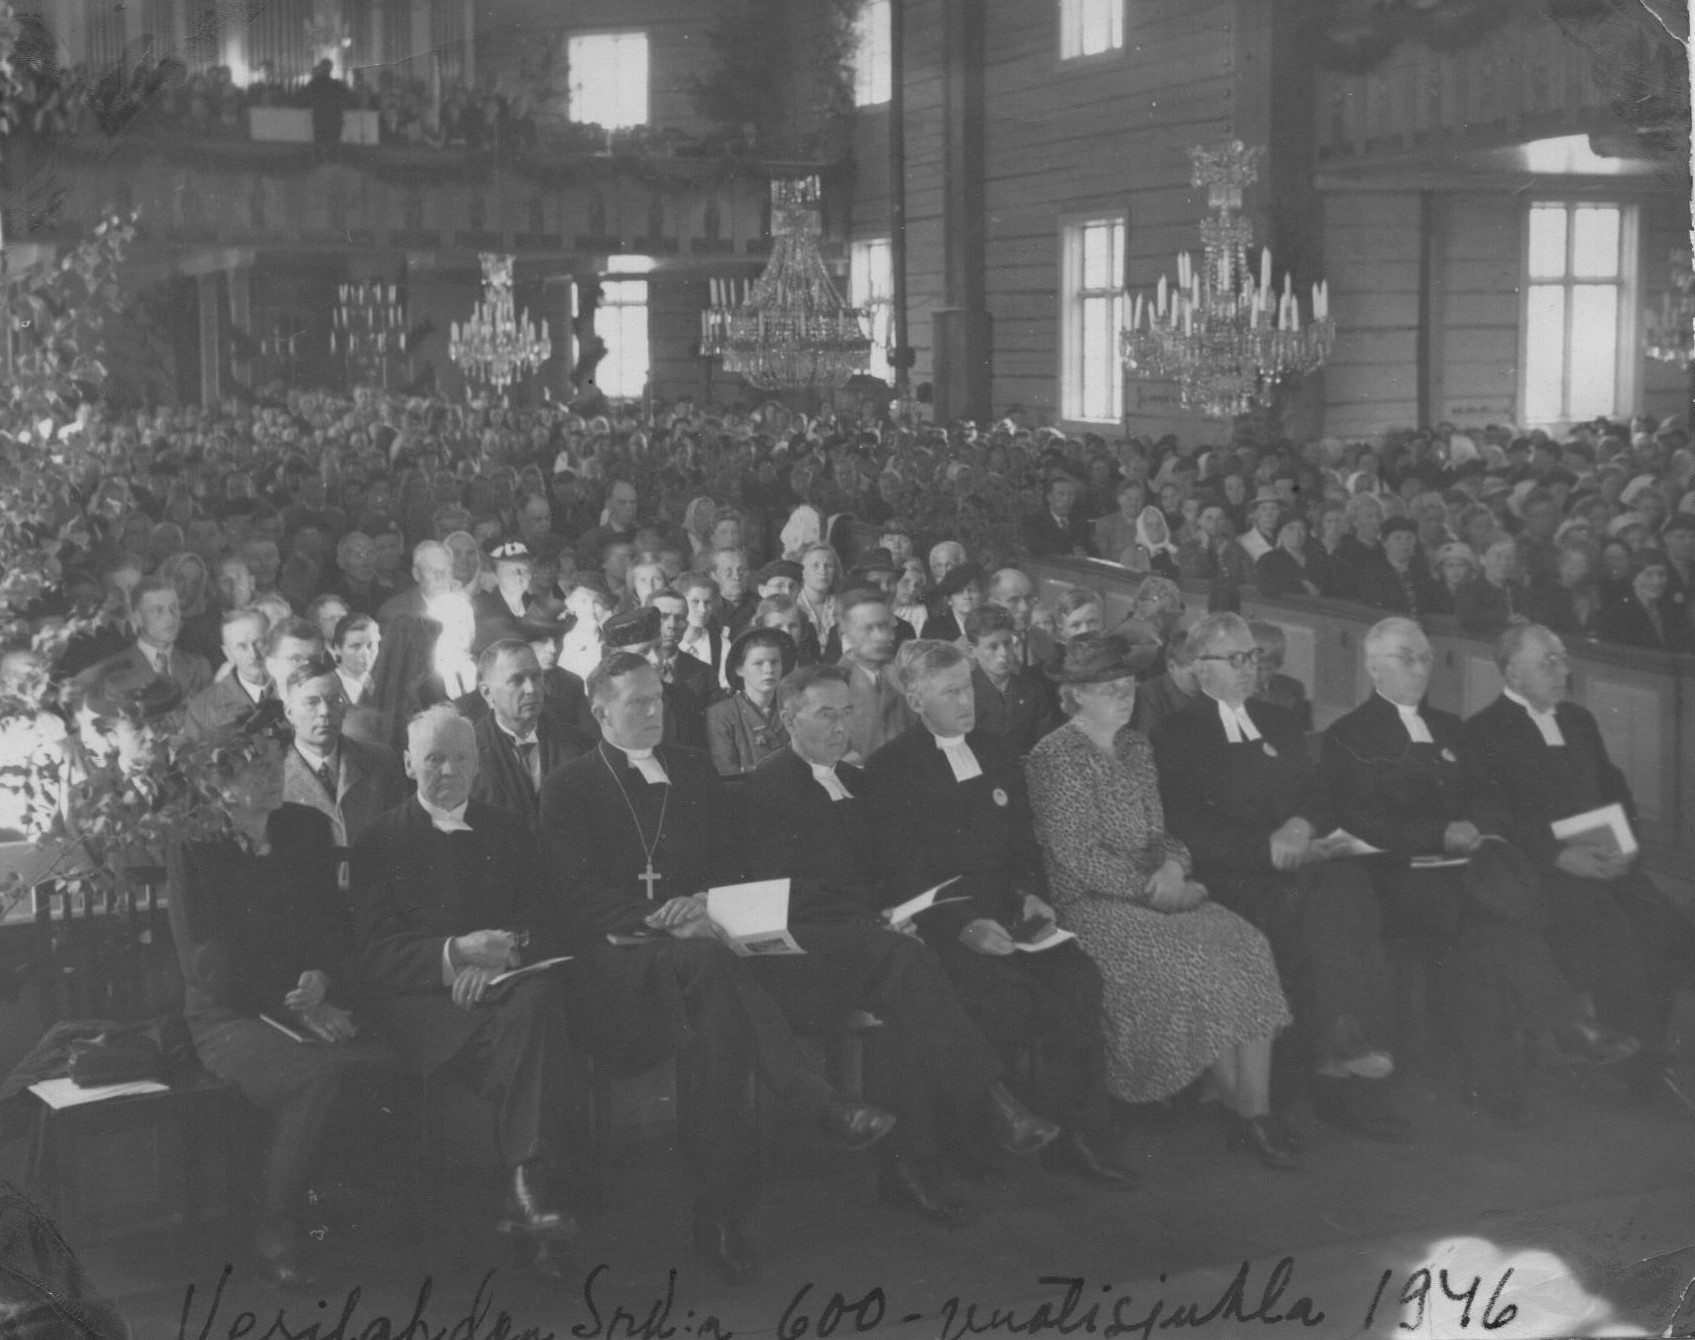 Vesilahden kirkossa on paljon väkeä juhlajumalanpalveluksessa vuonna 1946